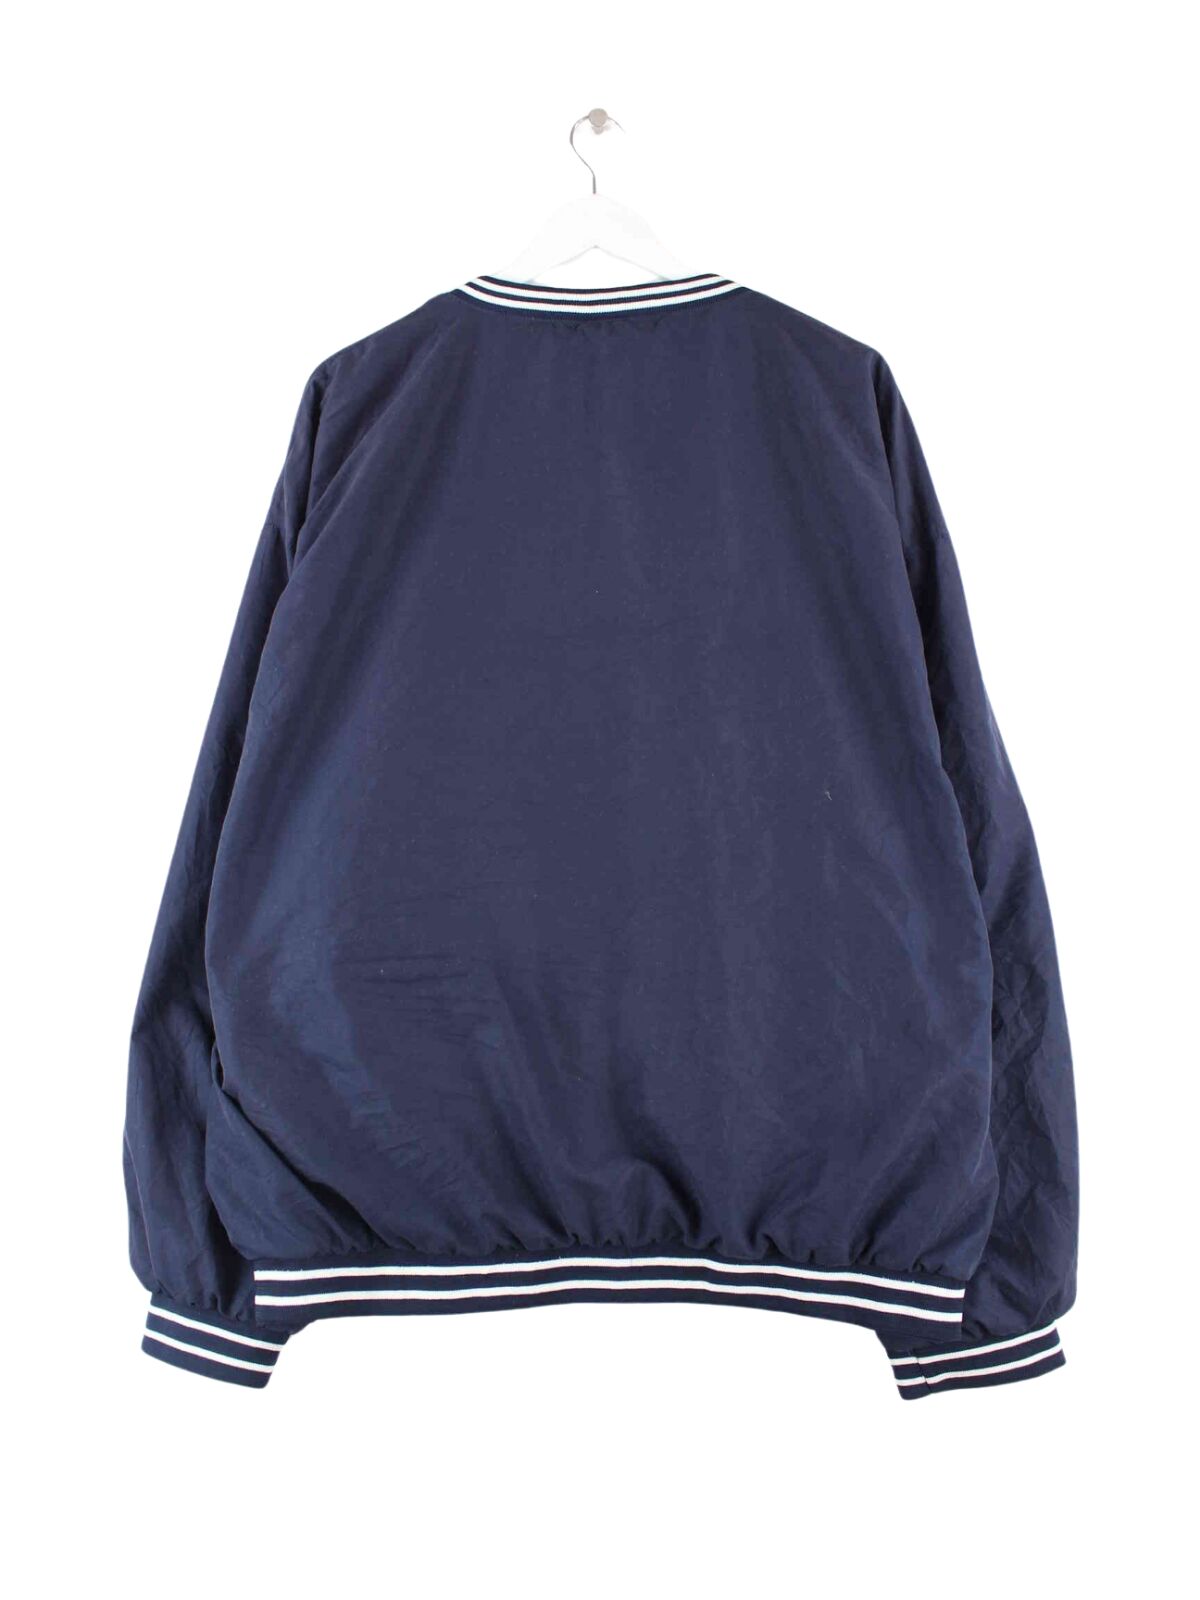 Reebok 90s Vintage V-Neck Track Top Sweater Blau XL (back image)